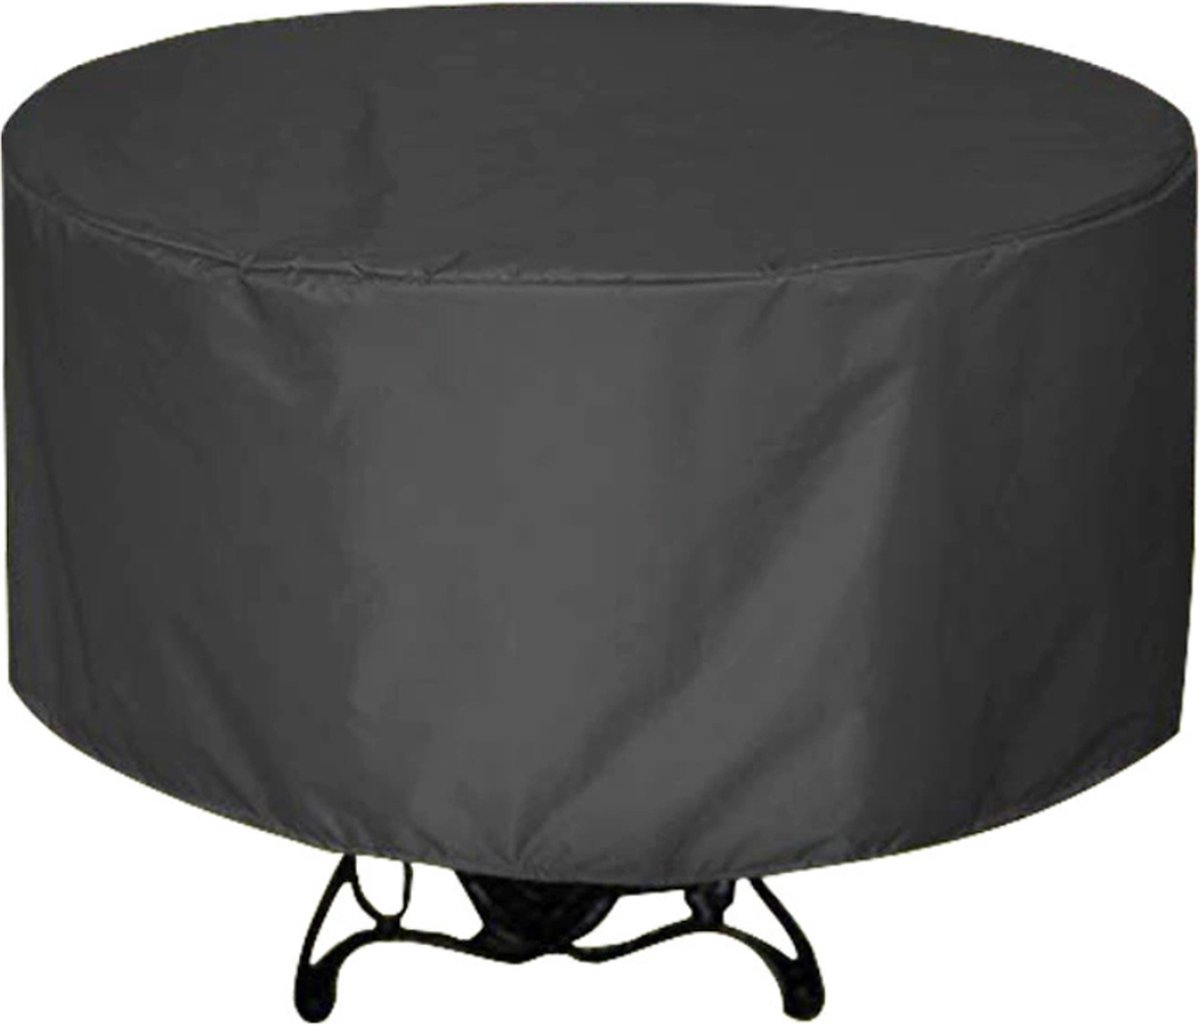 Hoppa! tuinmeubelhoes - tuinmeubelcover - buitenhoes - rond - zwart, 230*110 cm - hoes voor patio meubels, buitentafels - koffietafels en stoelen. 420D UV-bestendig, zilver gecoate Oxford-stof